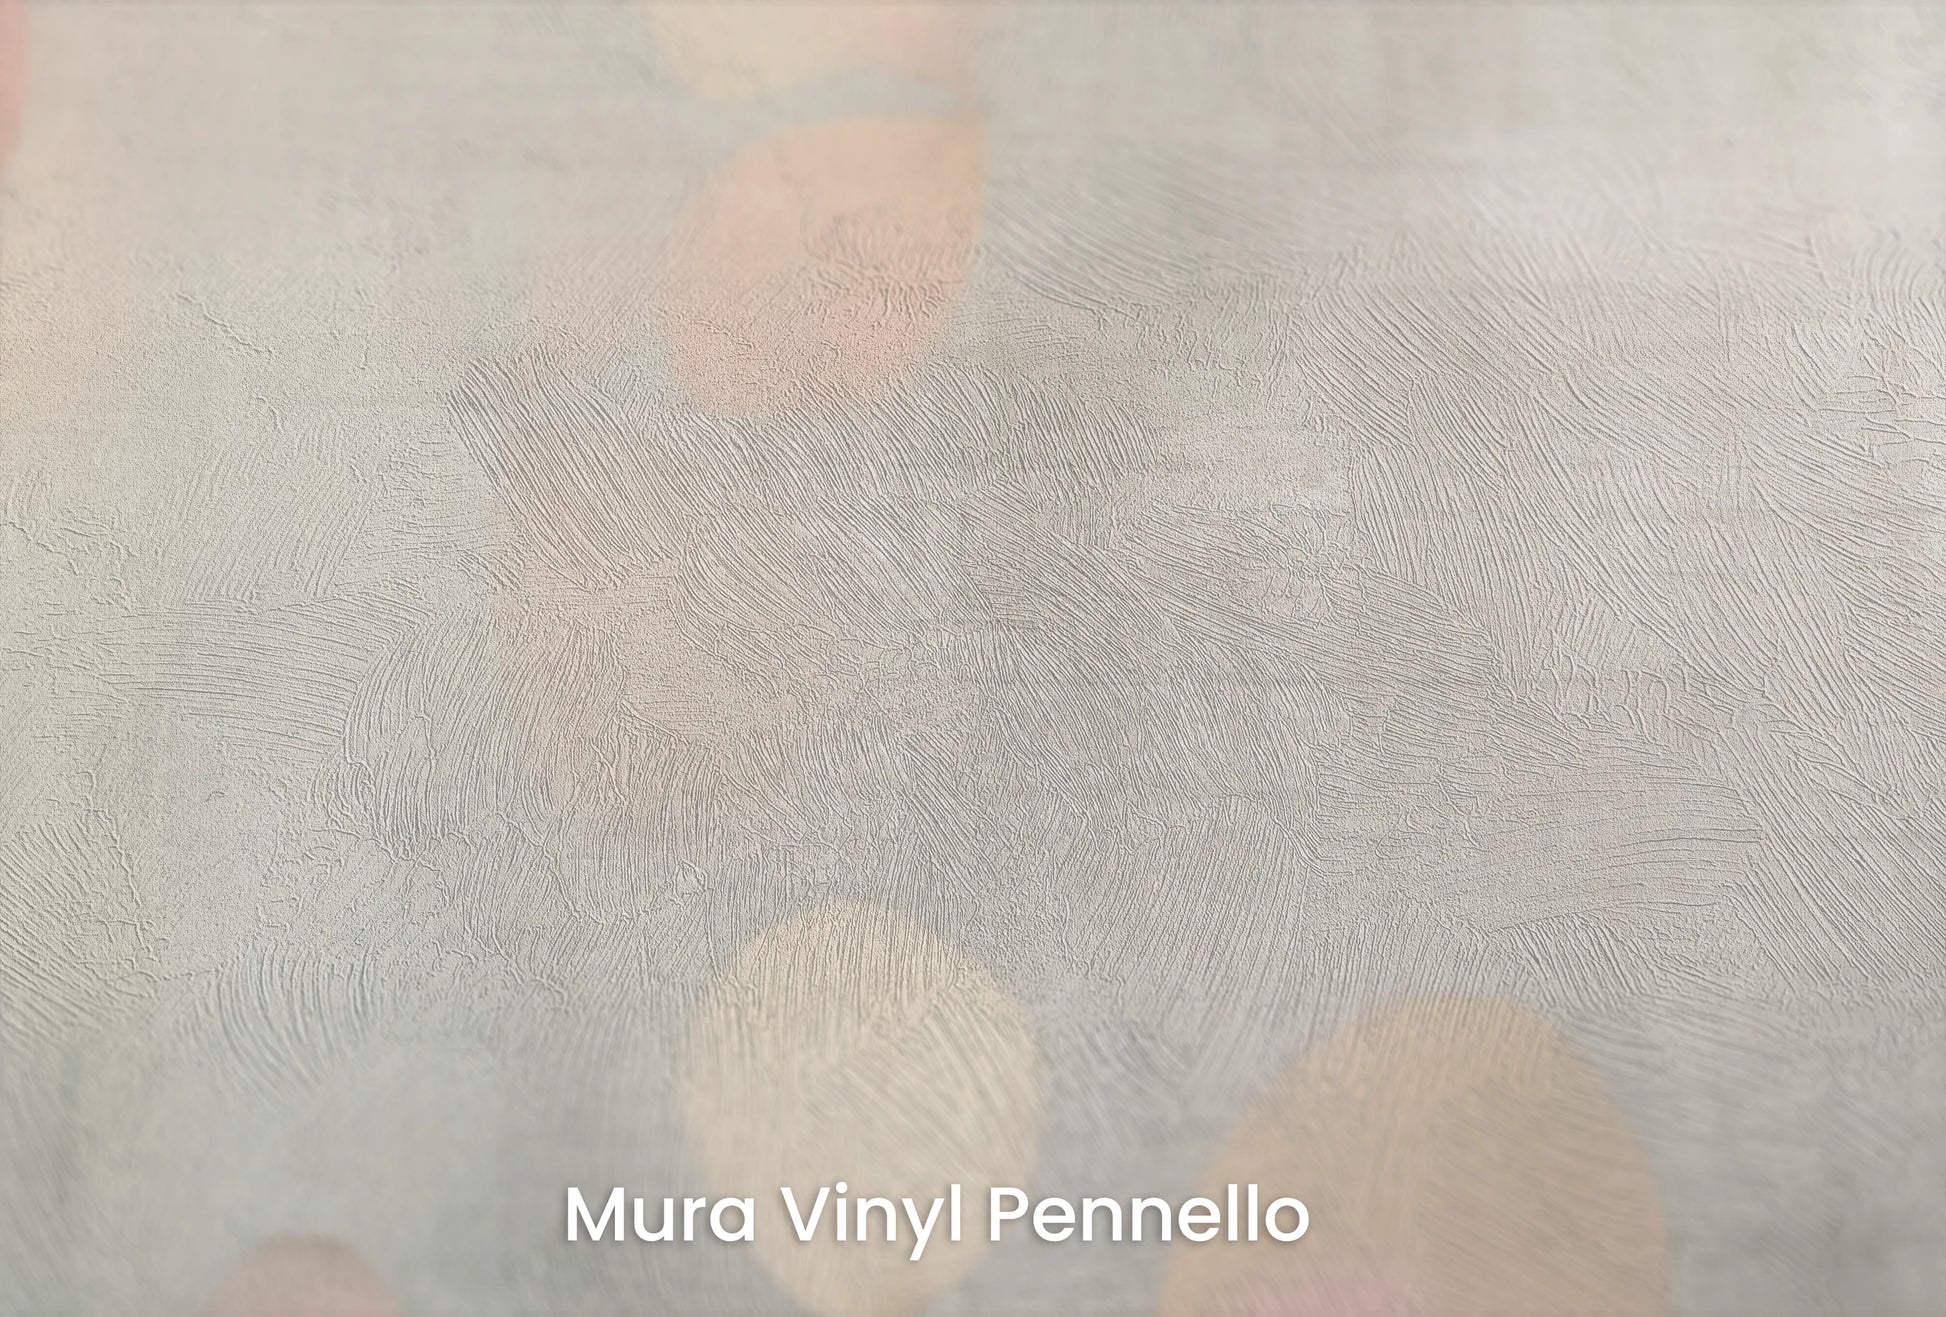 Zbliżenie na artystyczną fototapetę o nazwie Abstract Petals na podłożu Mura Vinyl Pennello - faktura pociągnięć pędzla malarskiego.